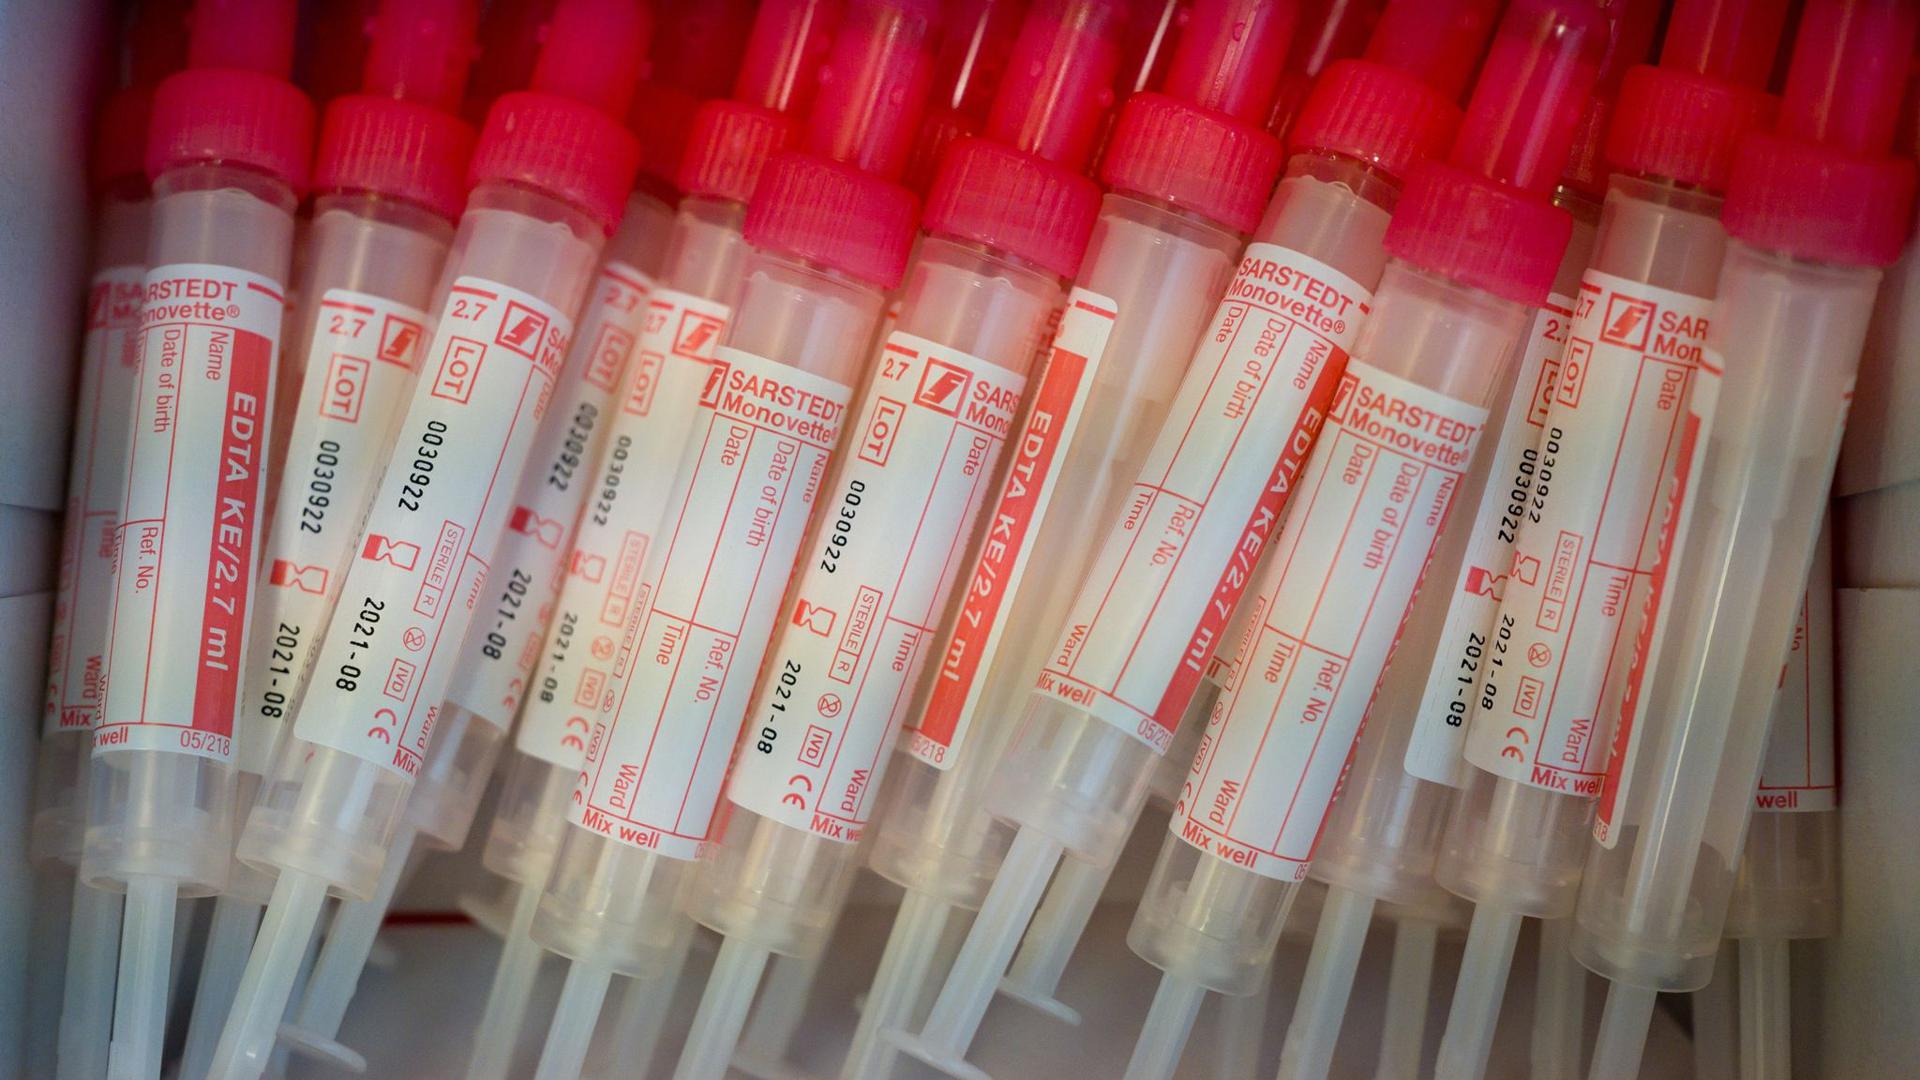 Proberöhren für die Blutentnahme liegen in einer Verpackung. Jeder soll sich in Bayern auf das Corona-Virus testen lassen können.